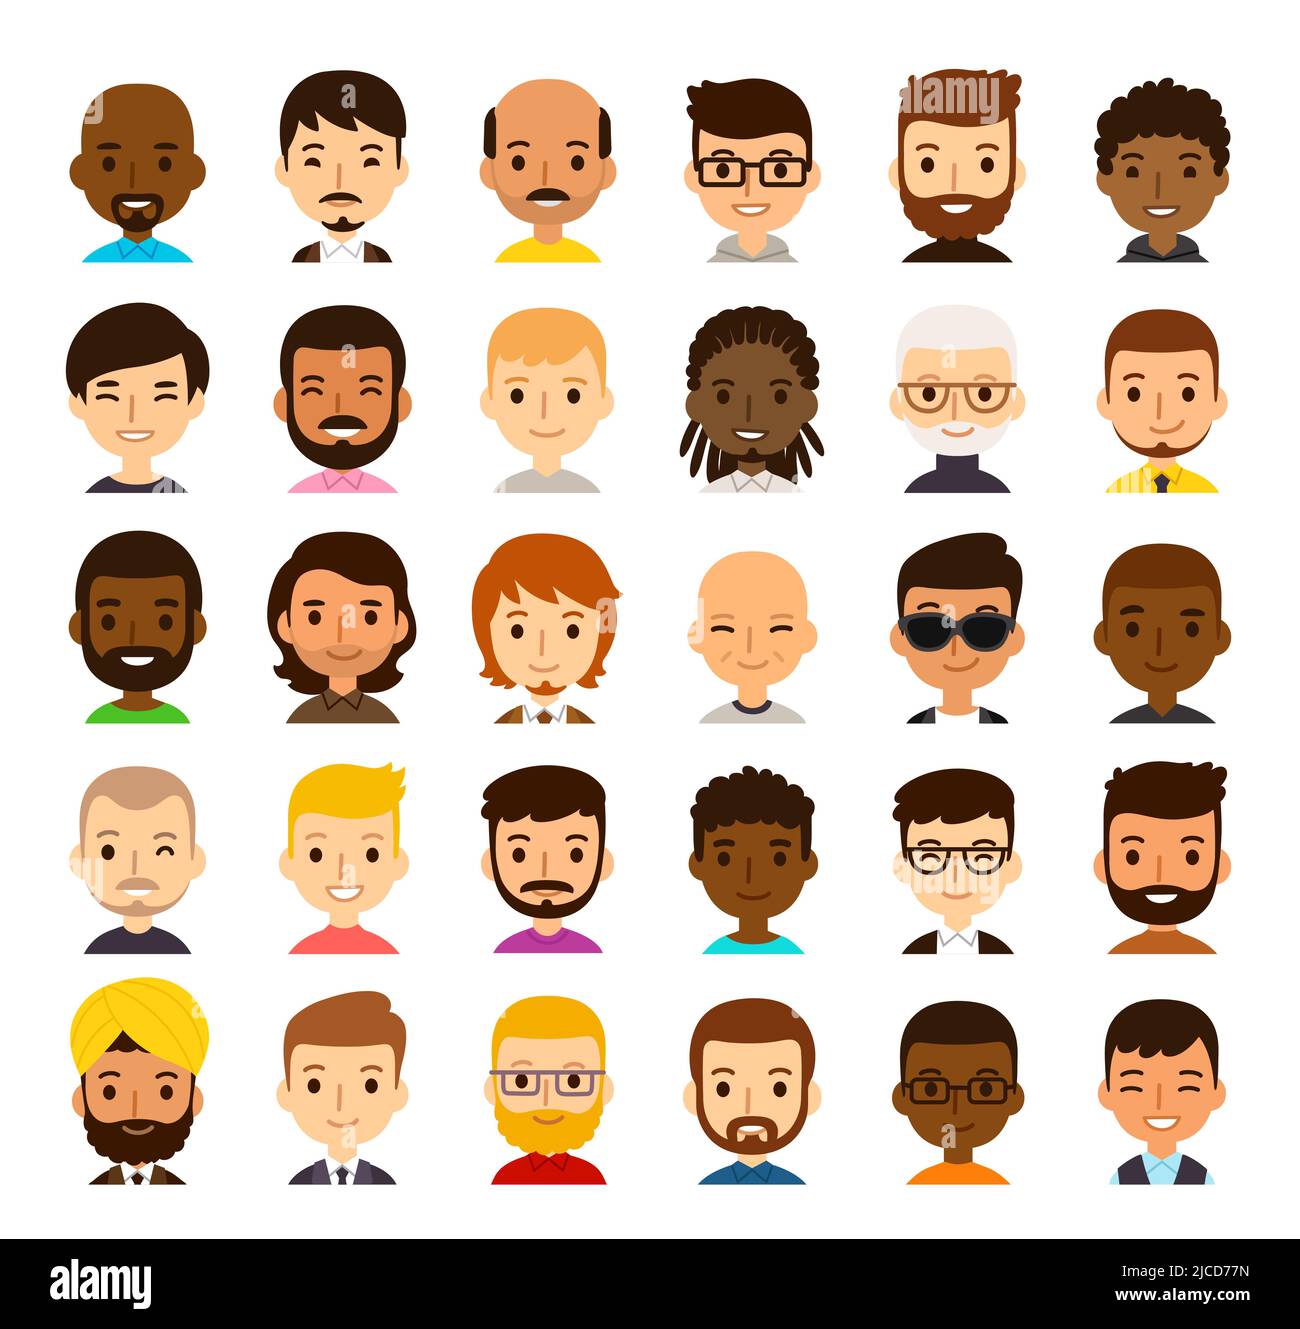 Set von 30 verschiedenen Cartoon männlichen Avataren. Männer unterschiedlicher Ethnien, Alter, Haut- und Haarfarbe. Niedlicher und einfacher, flacher Vektor-Stil, isoliert auf Weiß Stock Vektor